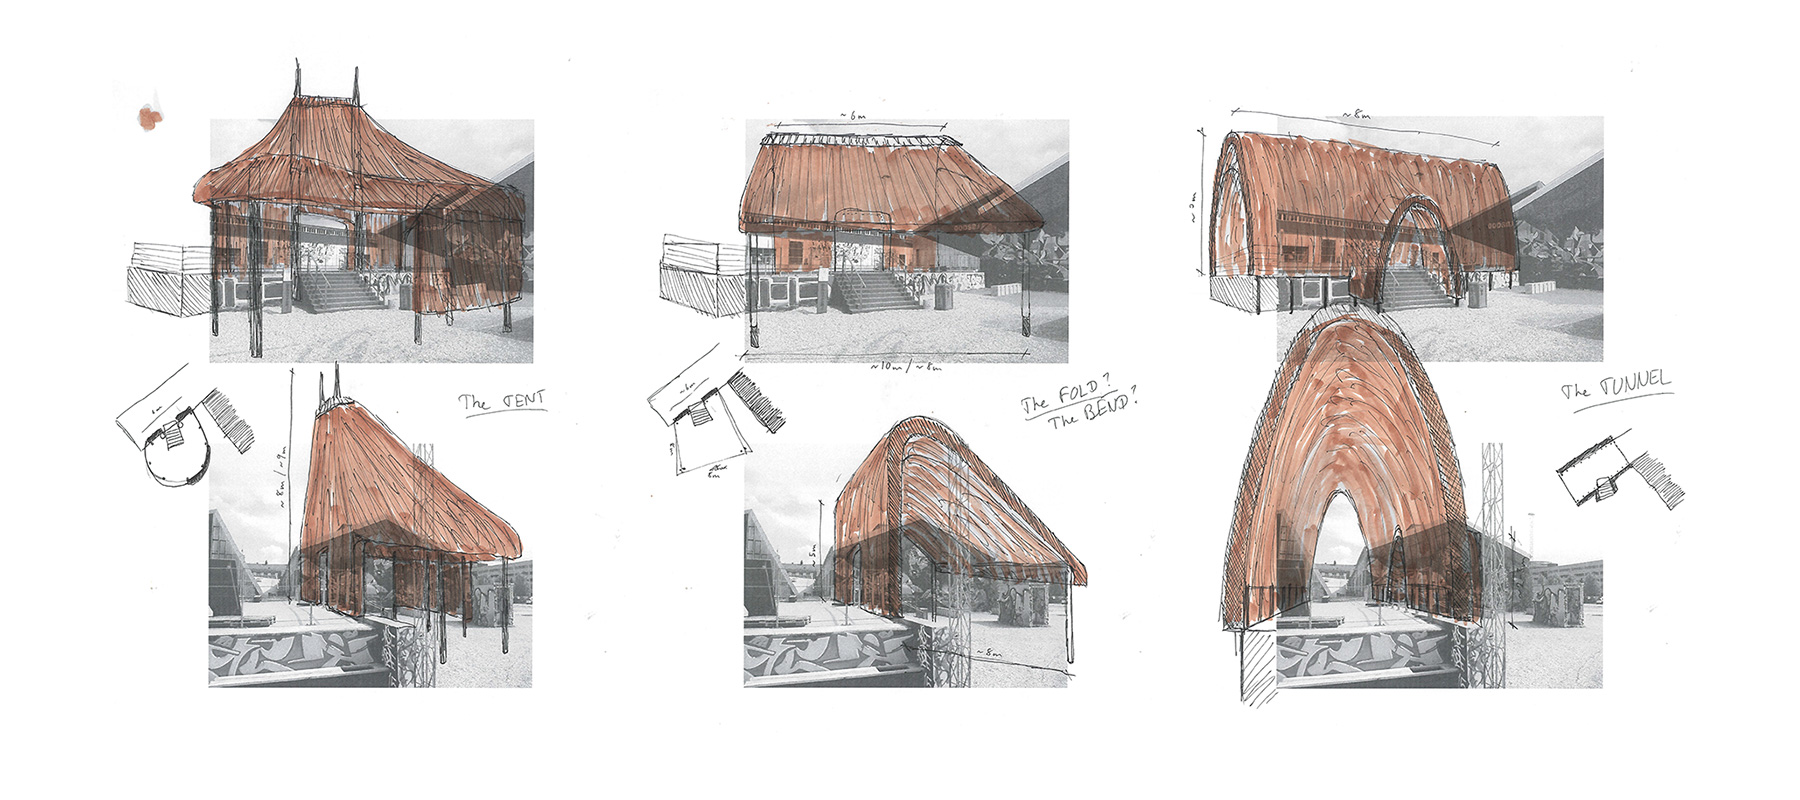 skoleprojekt skole projekt arkitekt arkitektskole aarhus workshop stråtag tag tække tæk træ europæisk kulturhovedstad rethink bæredygtig tømmer godsbanen pavillon holland